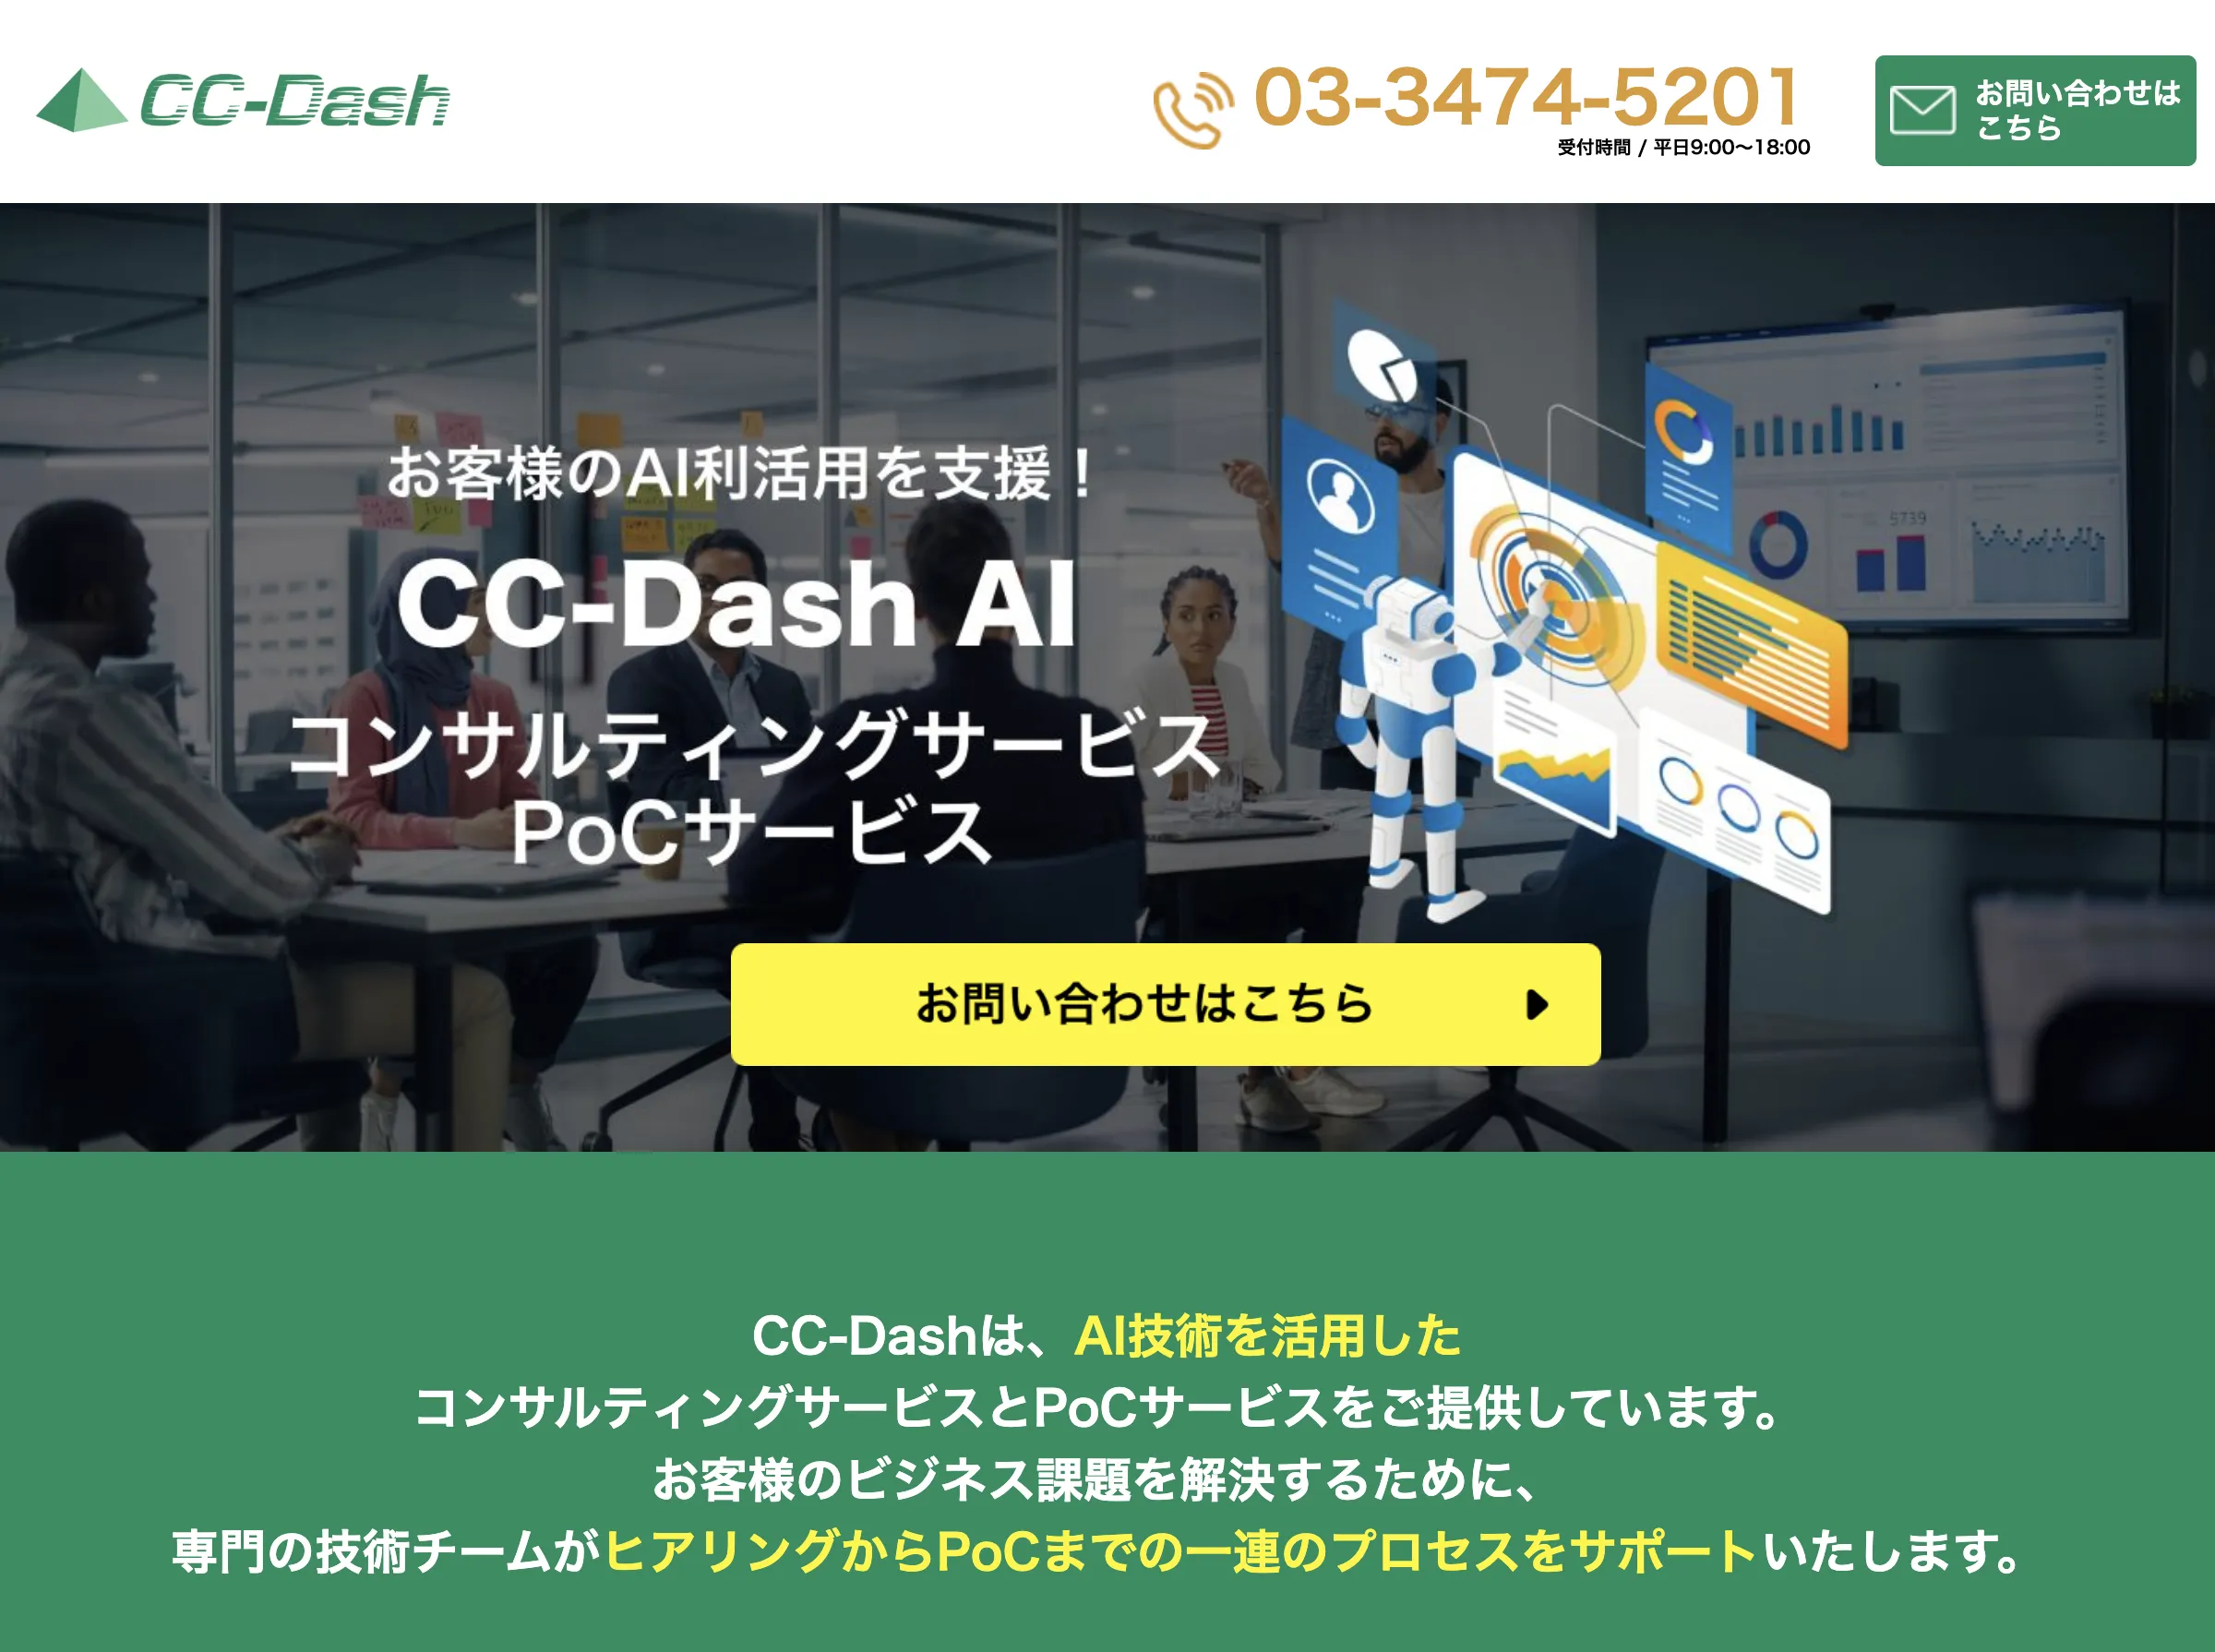 CC-Dash AIの紹介画像